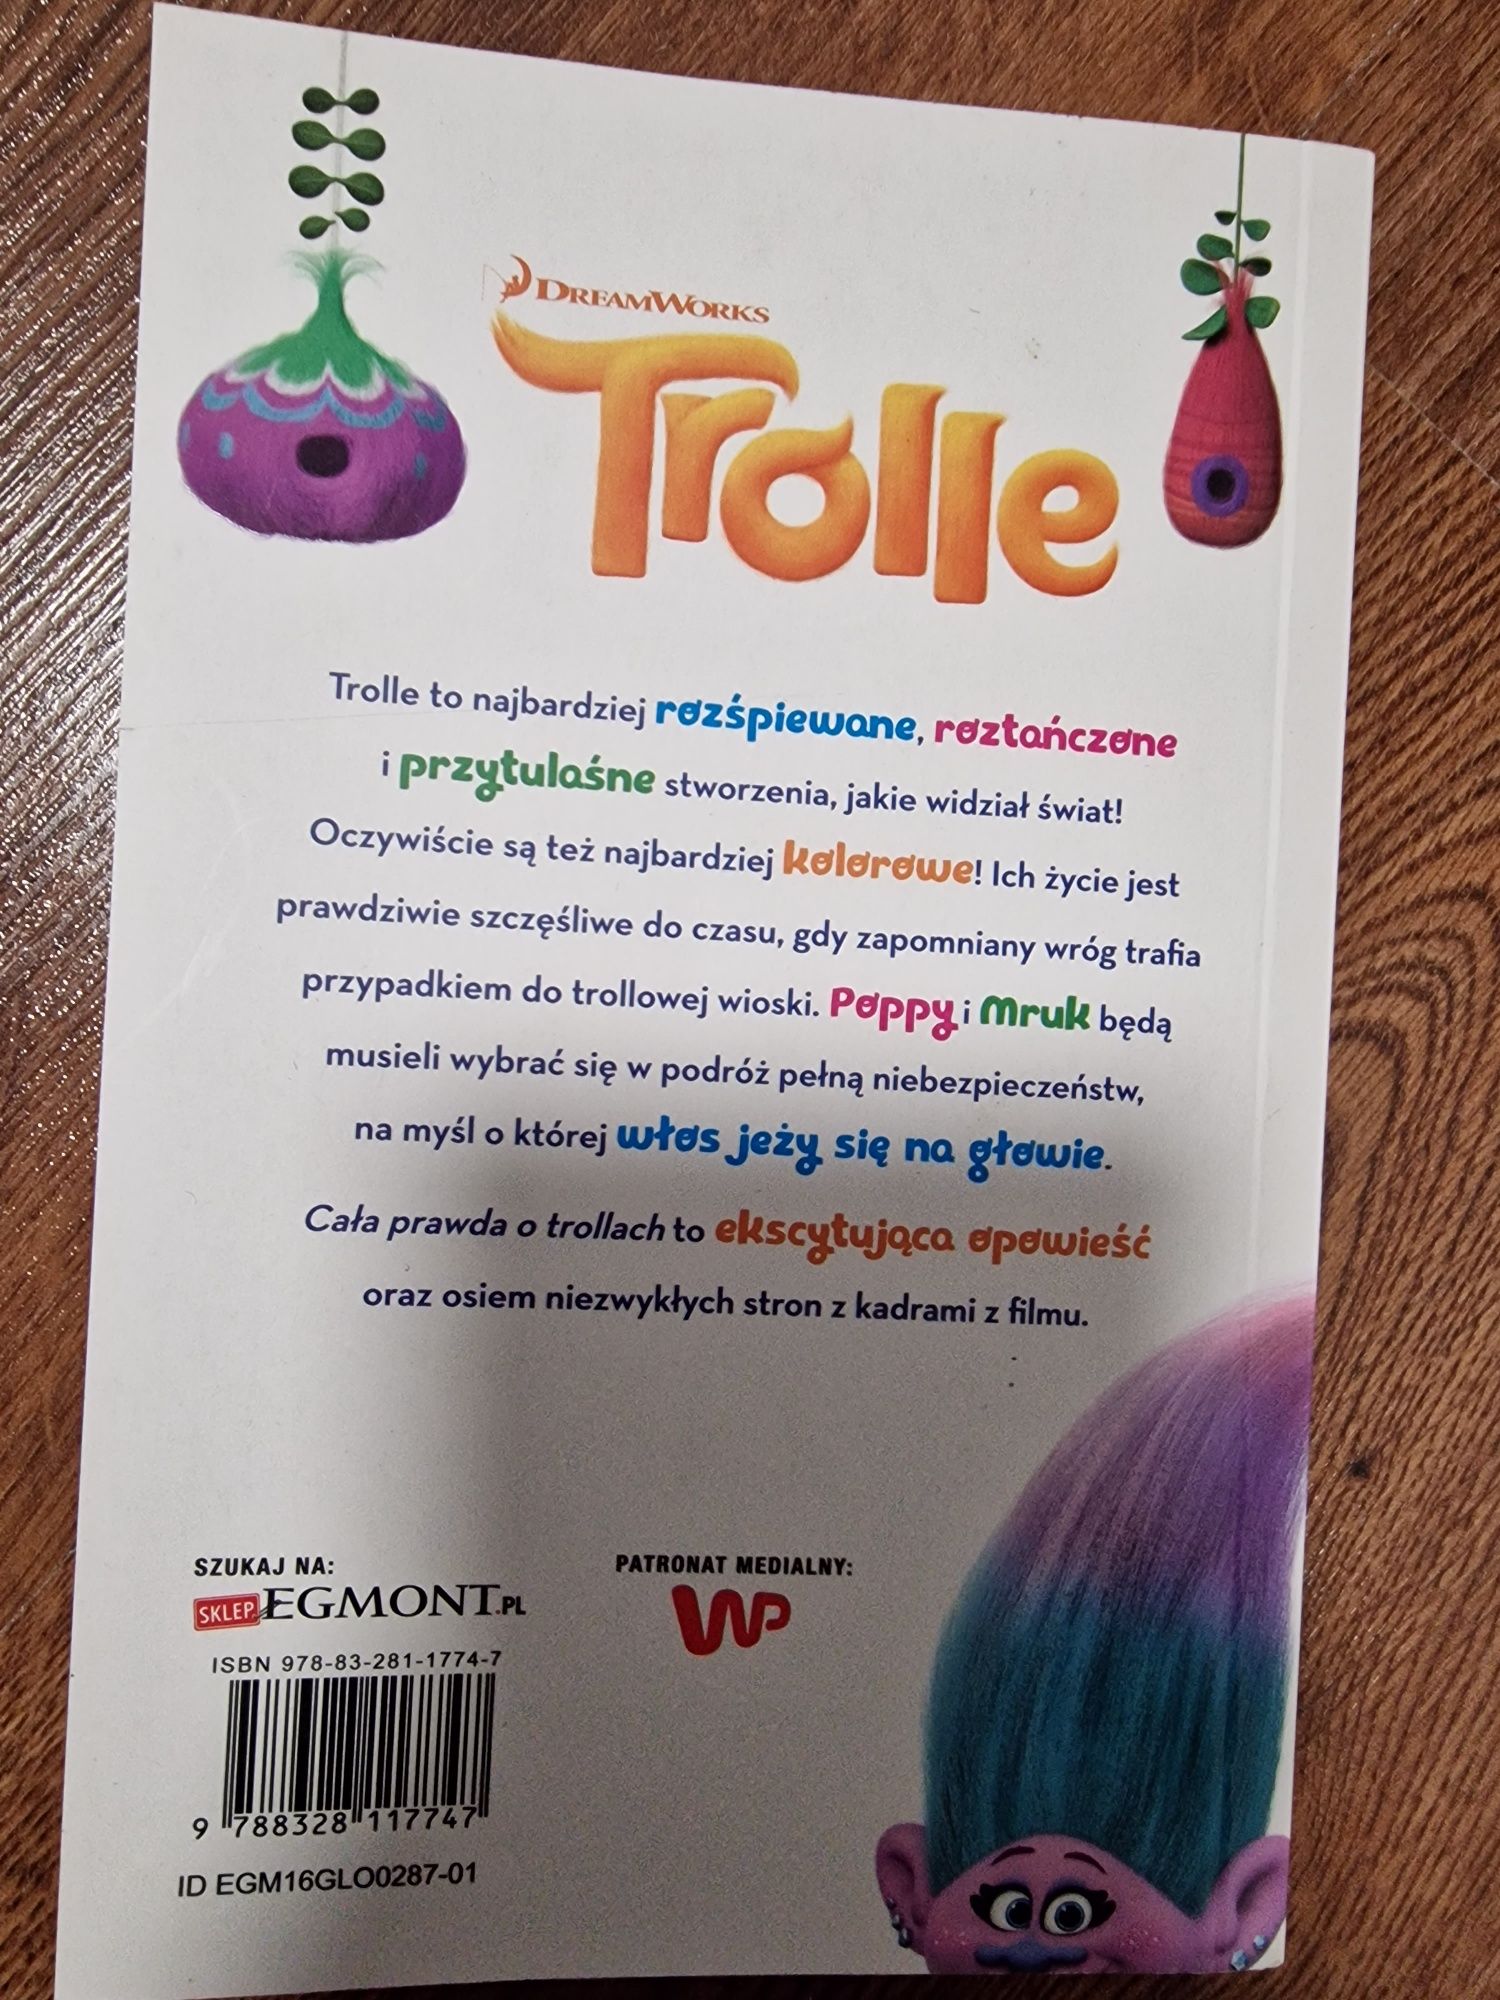 Książka Trolle, cała prawda o trollach